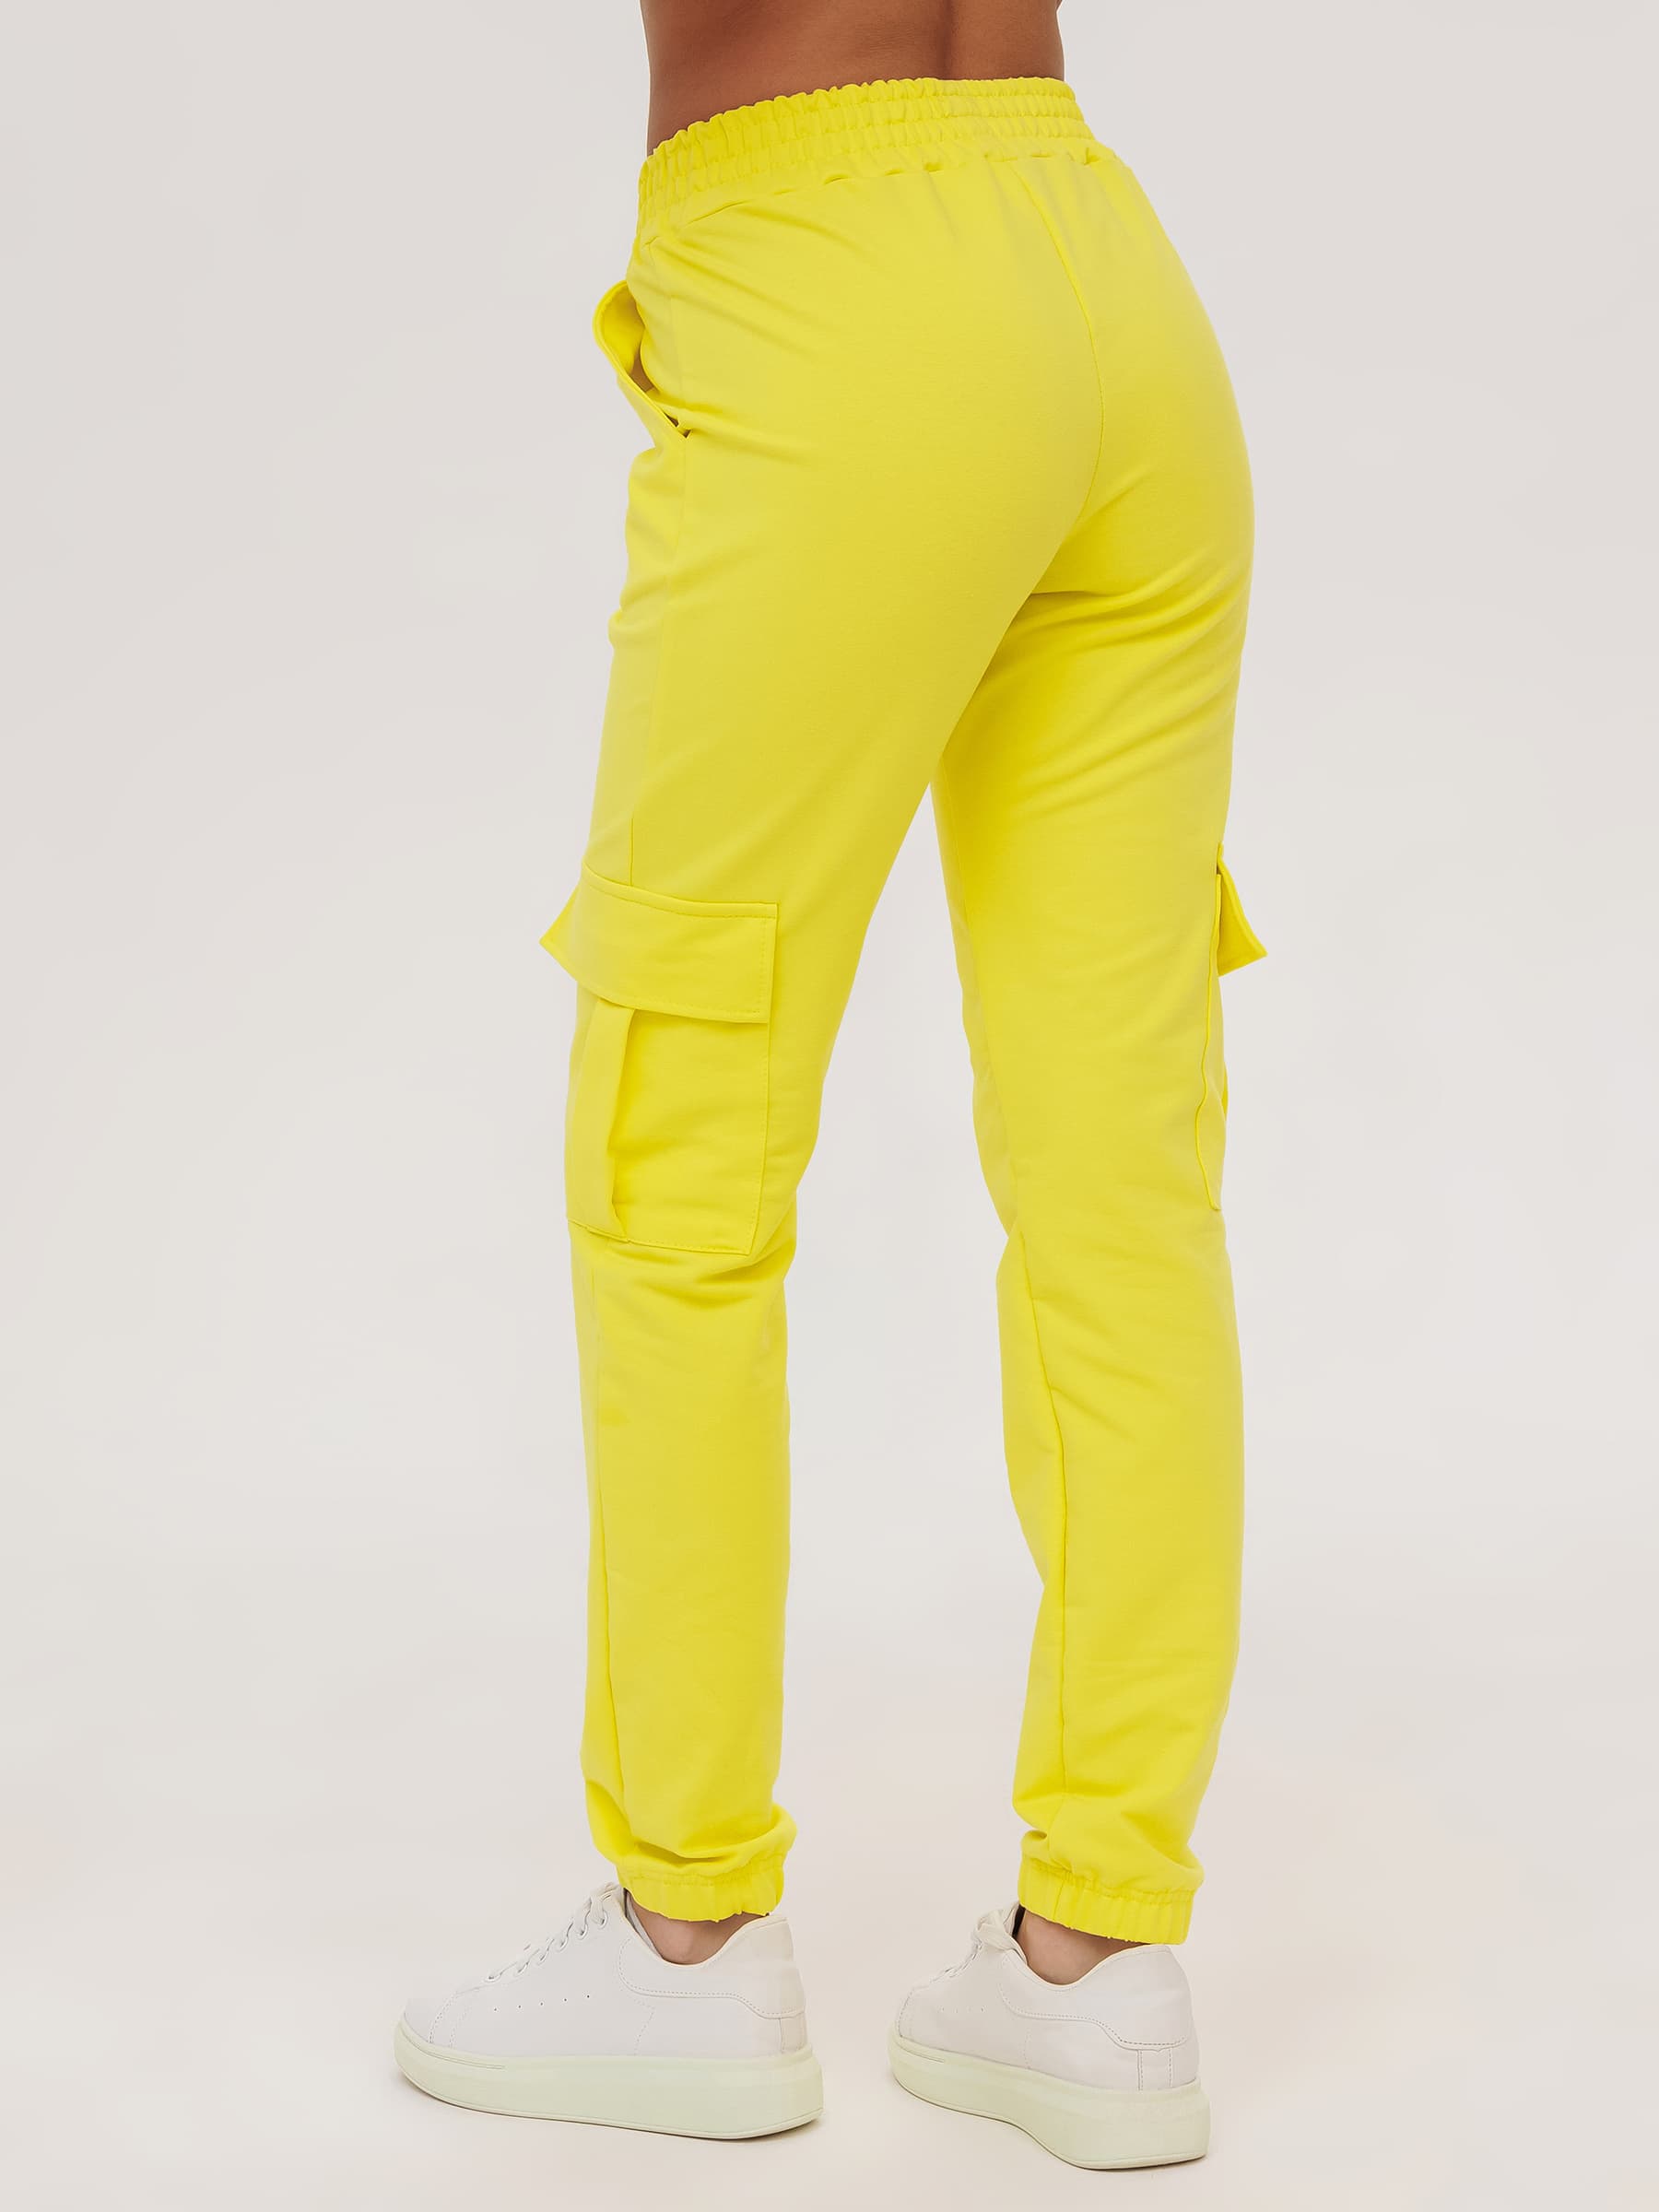 Жен. брюки повседневные арт. 23-0524 Желтый р. 42 Моделлини, размер 42 - фото 7